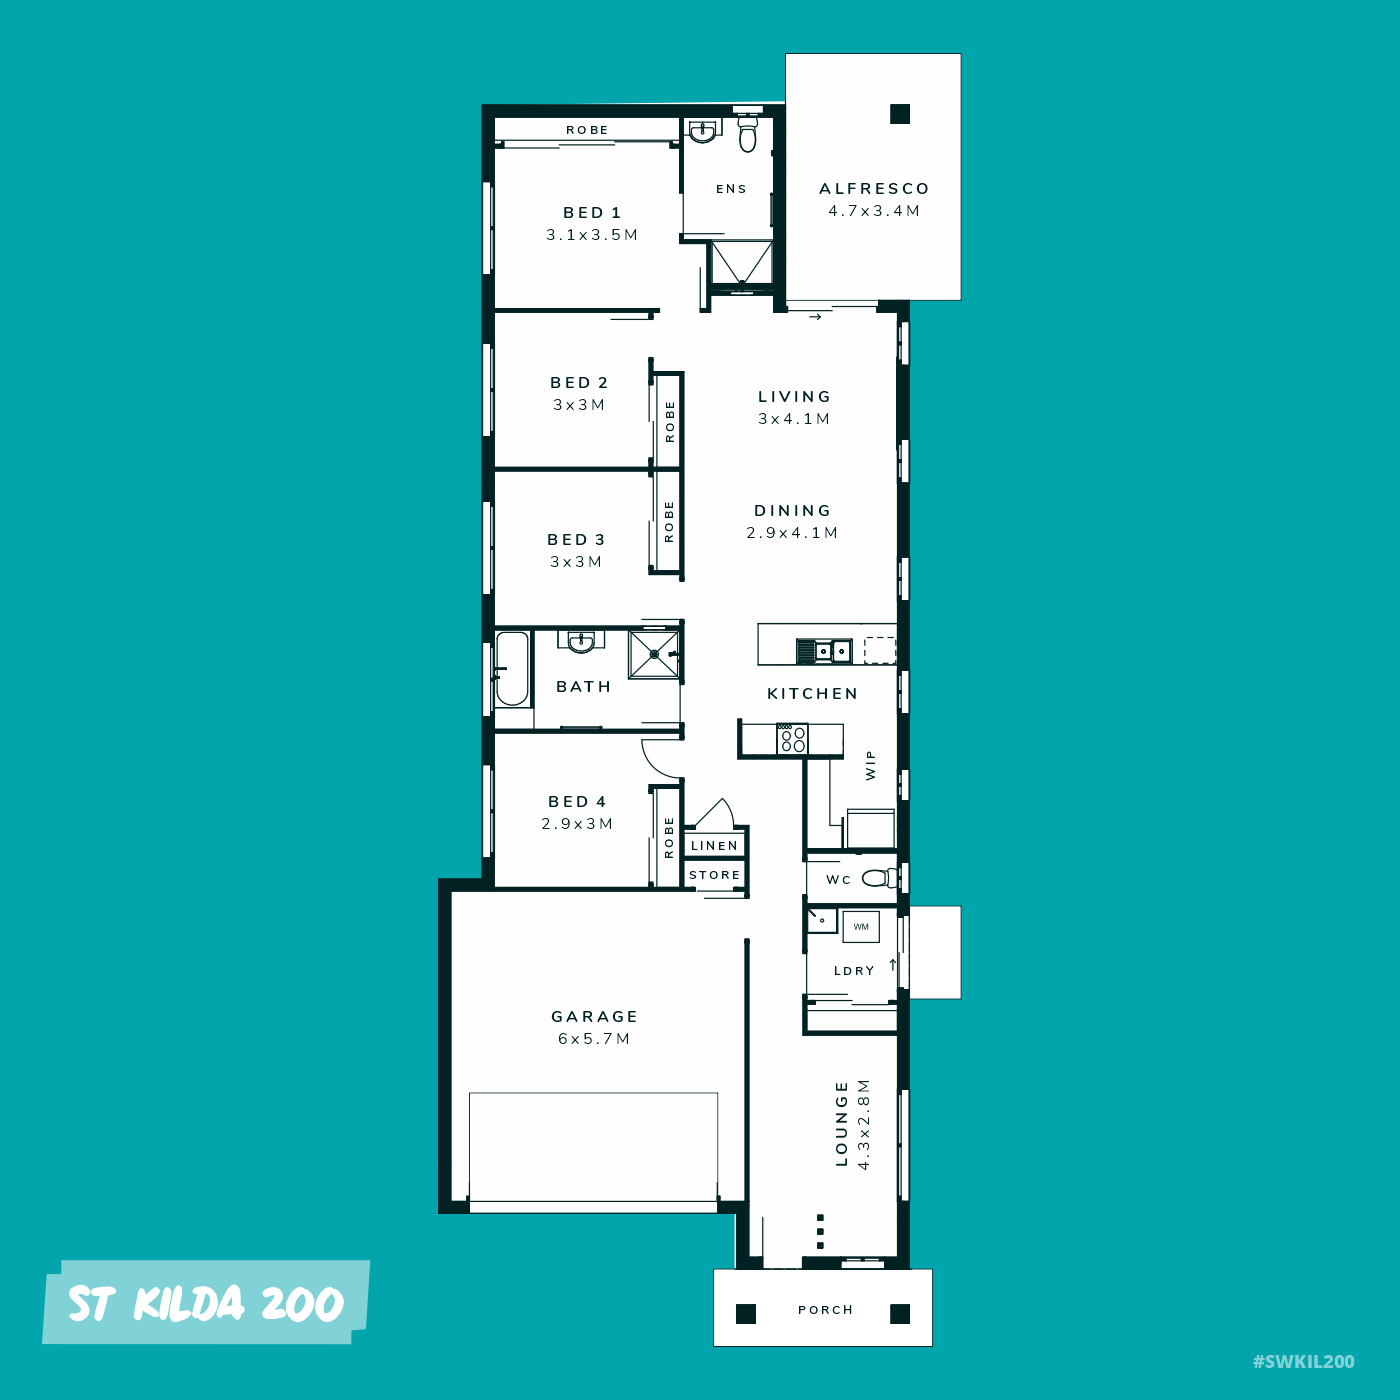 4 bedroom home design builder floorplan queensland facade layout house land